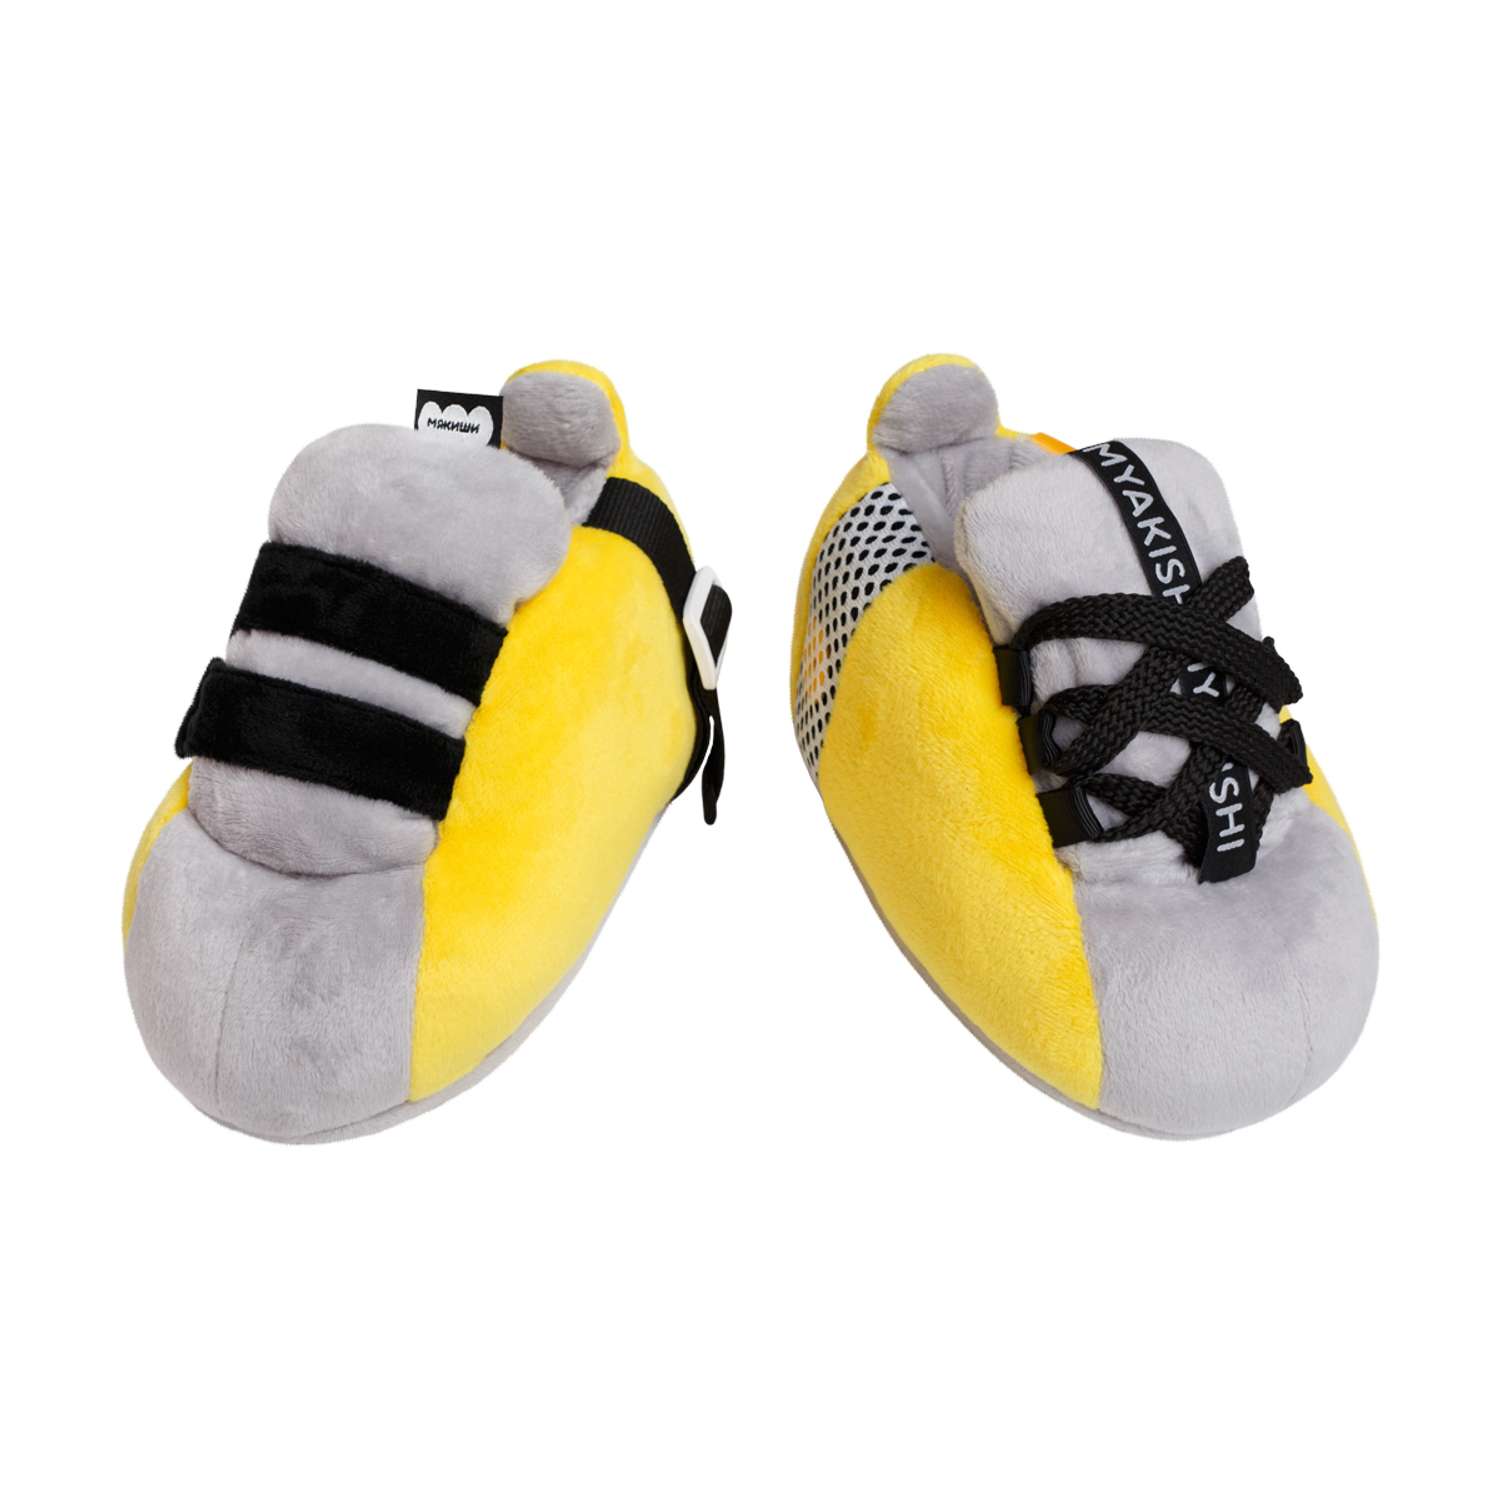 Игрушка Мякиши Игрушка детская развивающая Шнуровка Ботинки / шнуровка для детей / подарок / бизиборд - фото 1